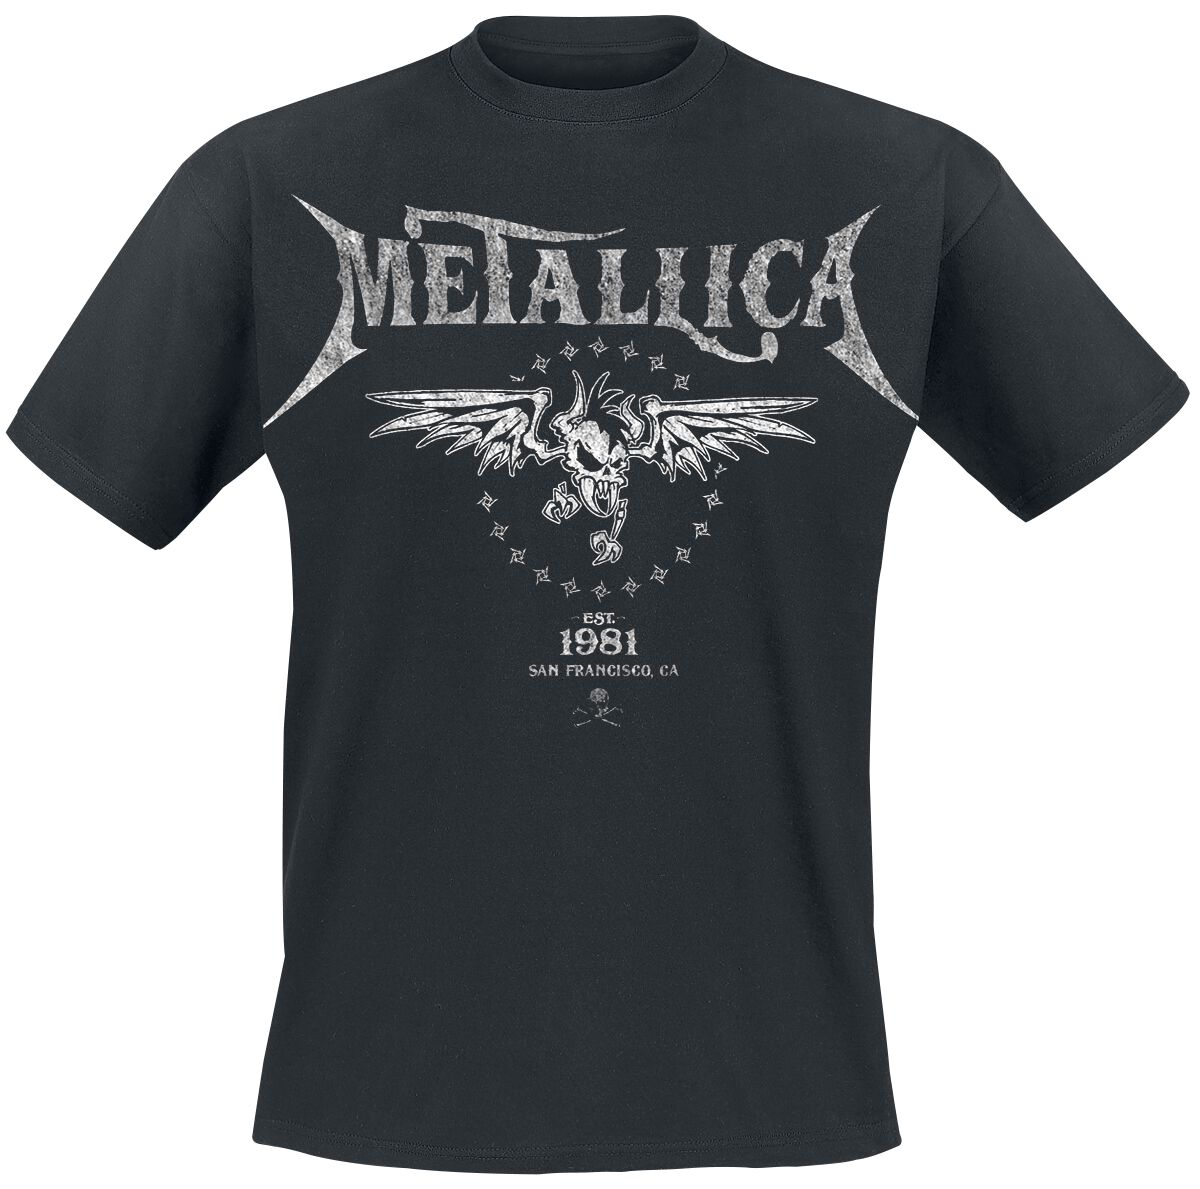 Metallica T-Shirt - Biker - S bis 5XL - für Männer - Größe M - schwarz  - Lizenziertes Merchandise!